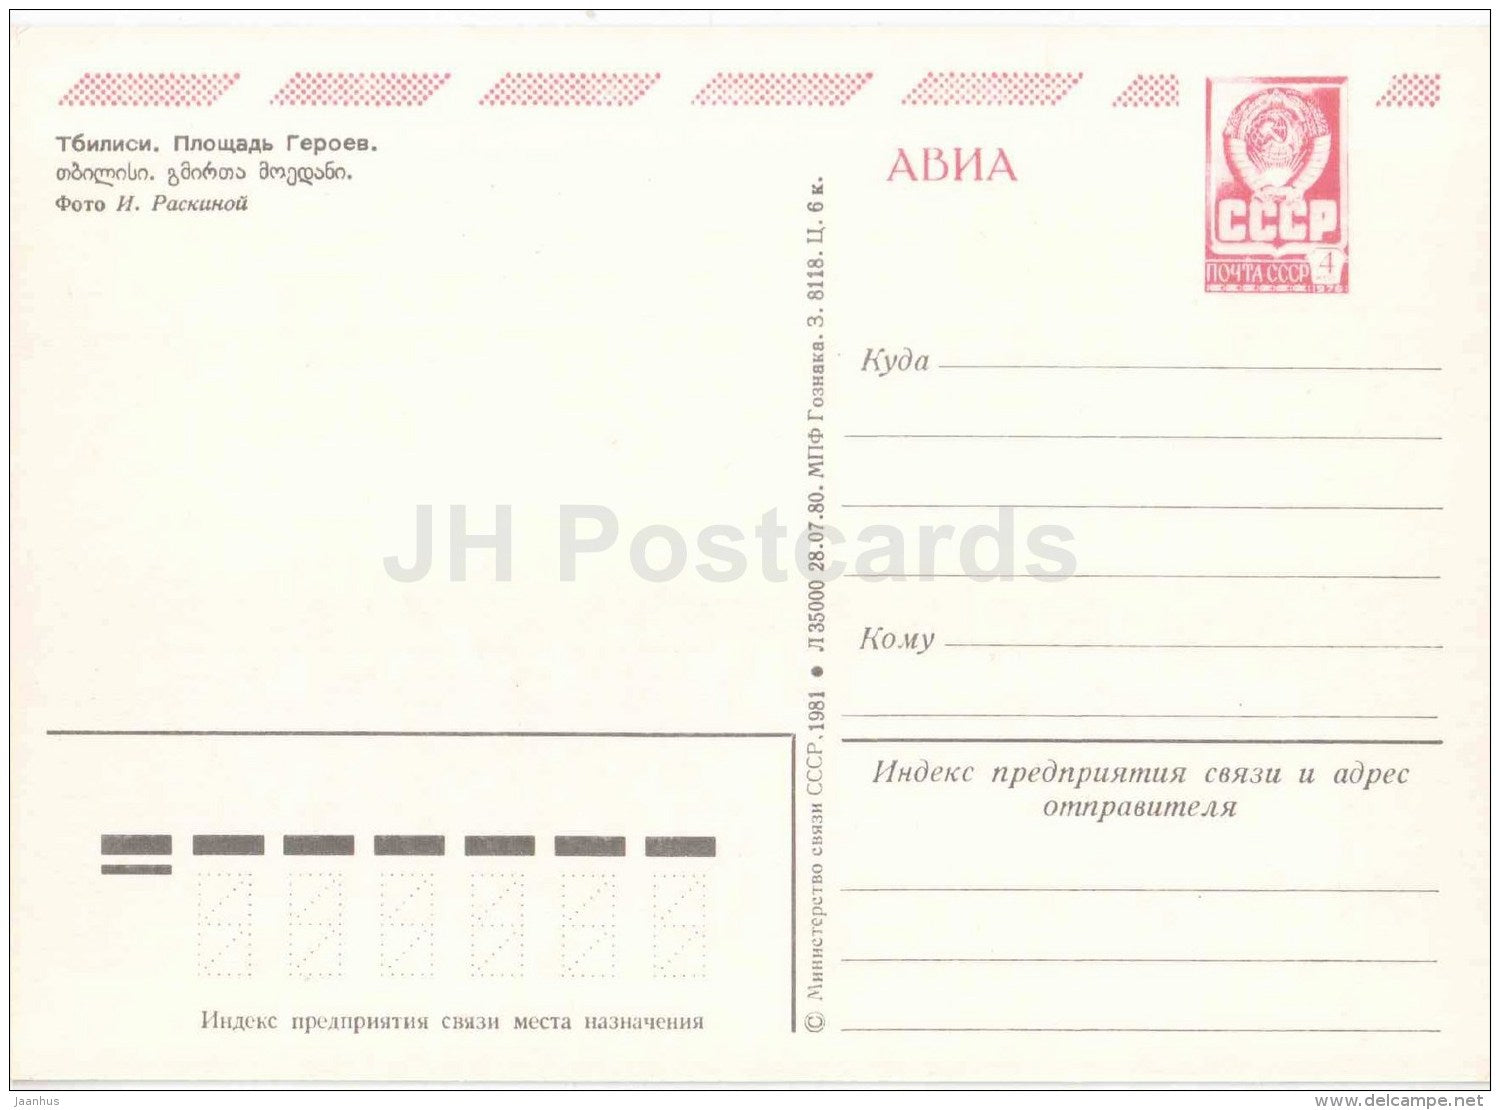 Heroe´s square - bus Ikarus - Tbilisi - postal stationery - AVIA - 1981 - Georgia USSR - unused - JH Postcards